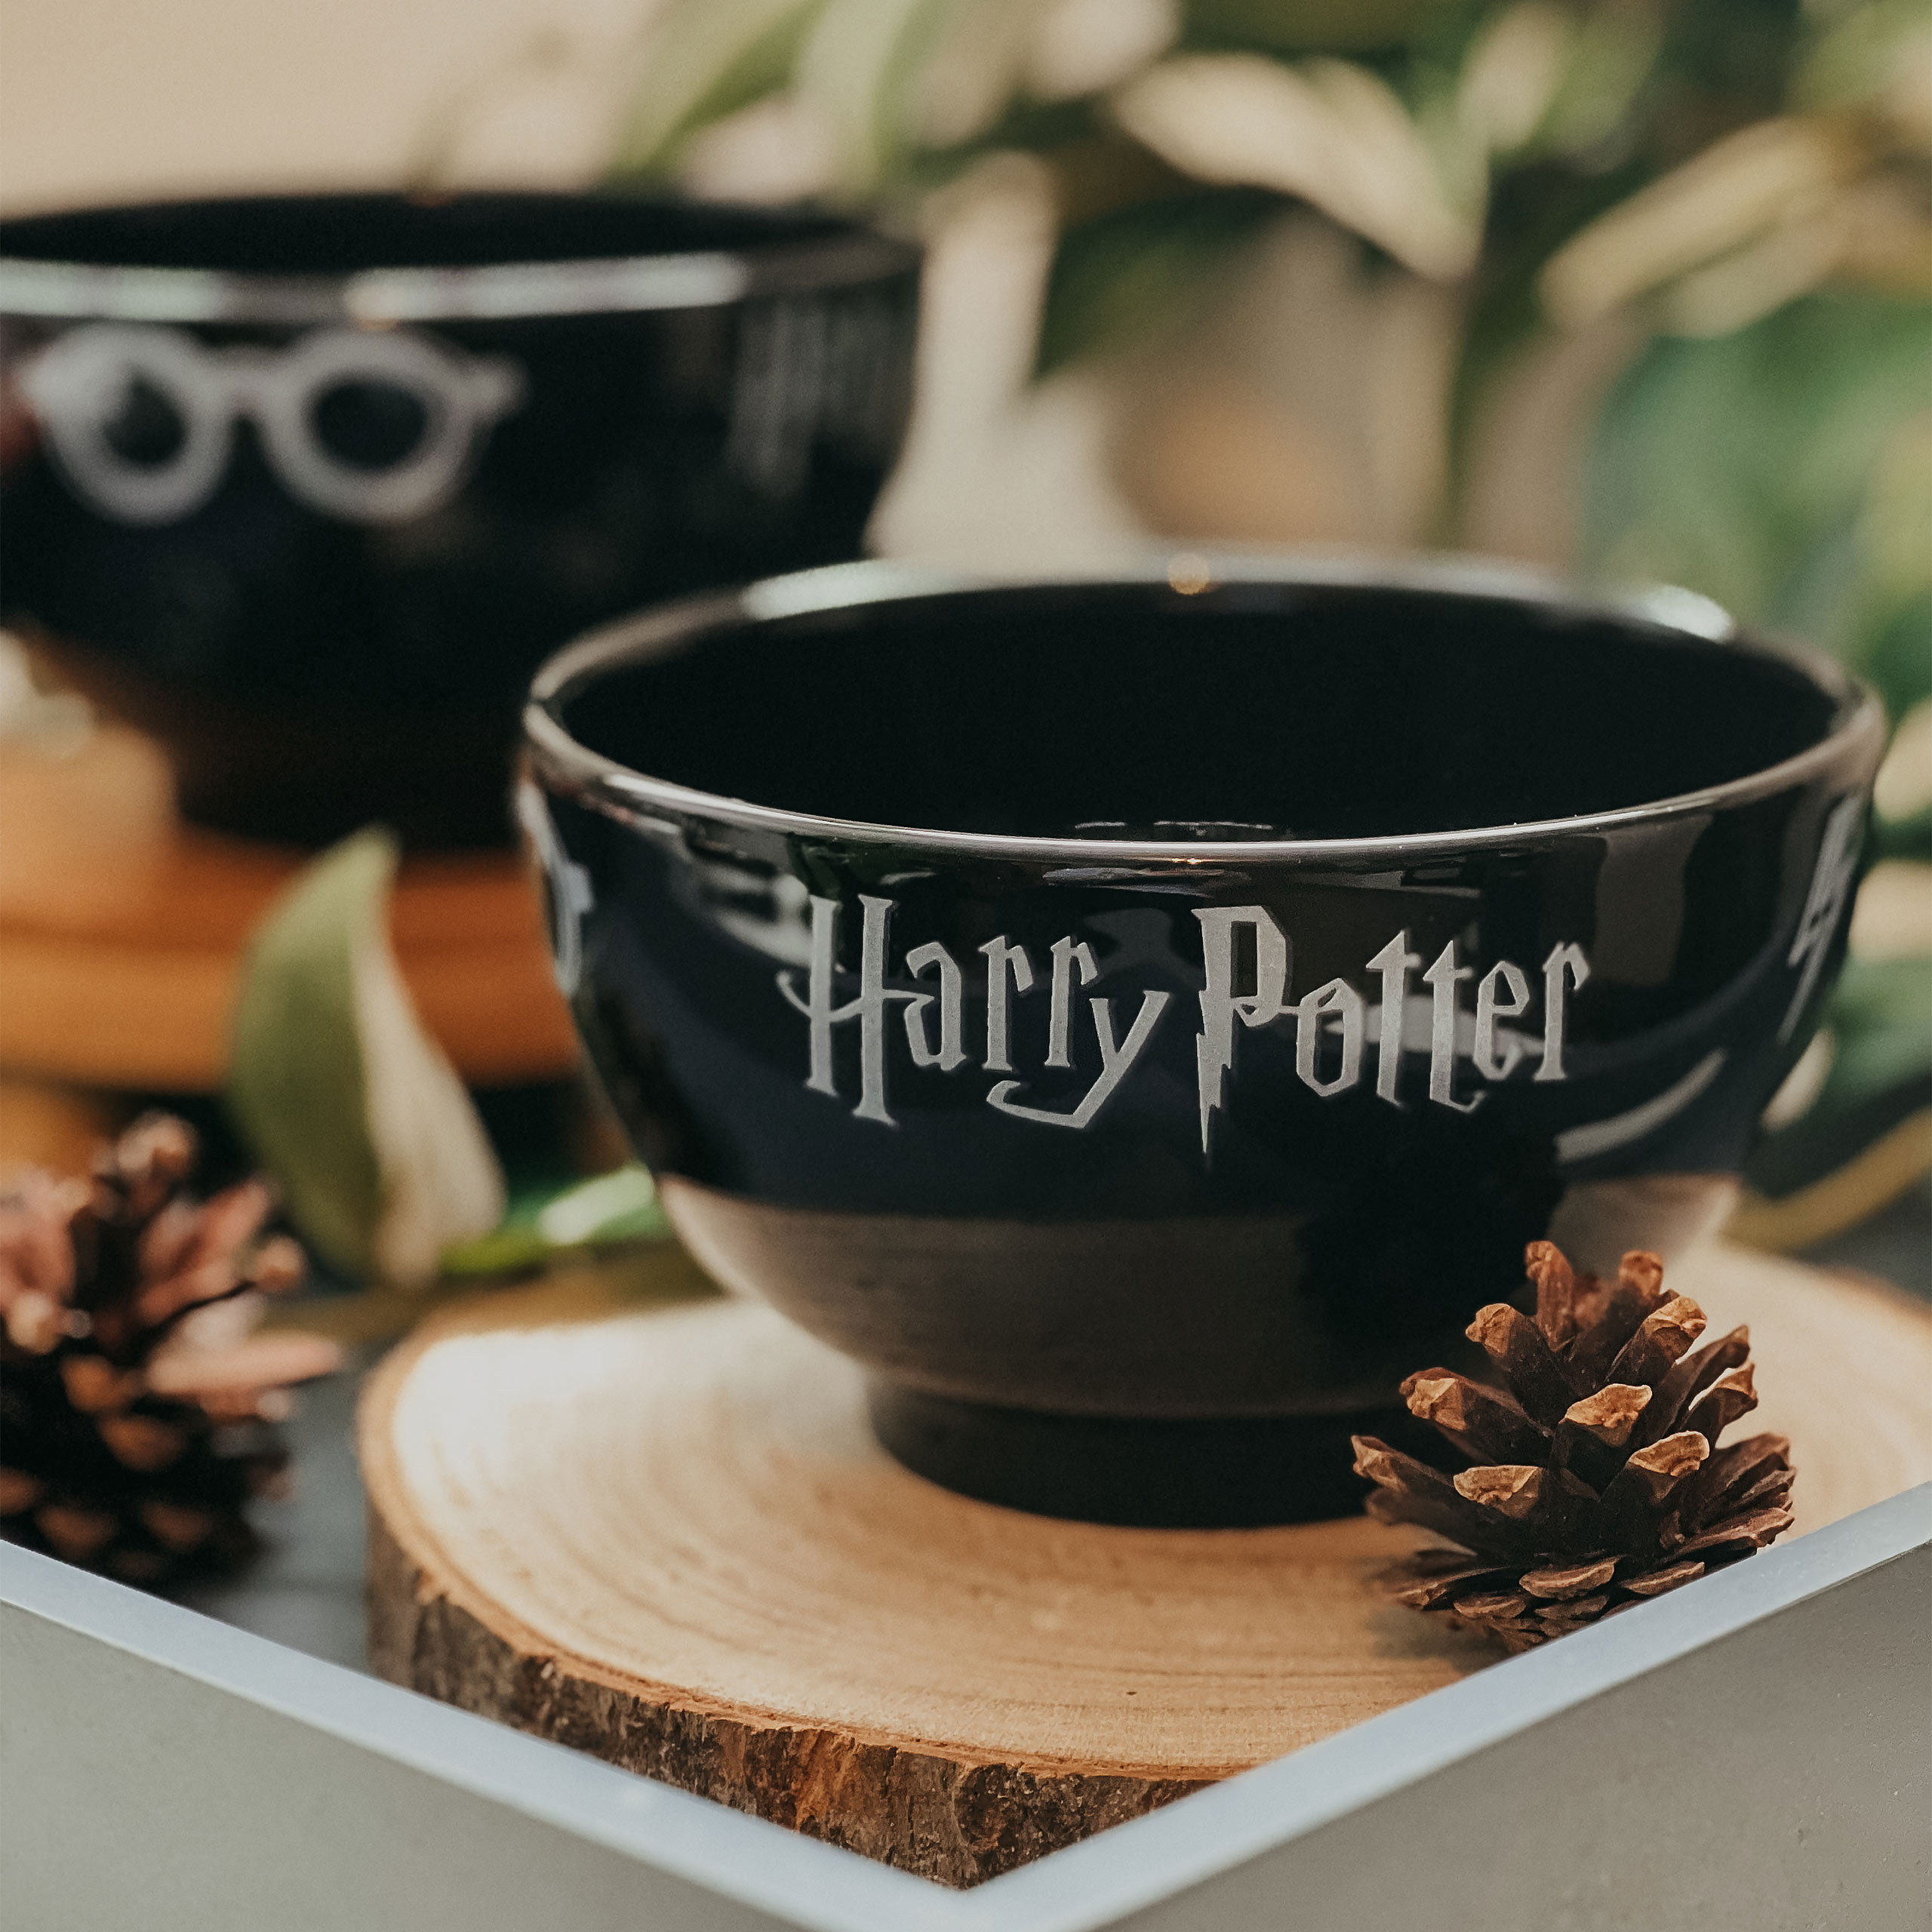 Harry Potter - Bol à céréales Icons